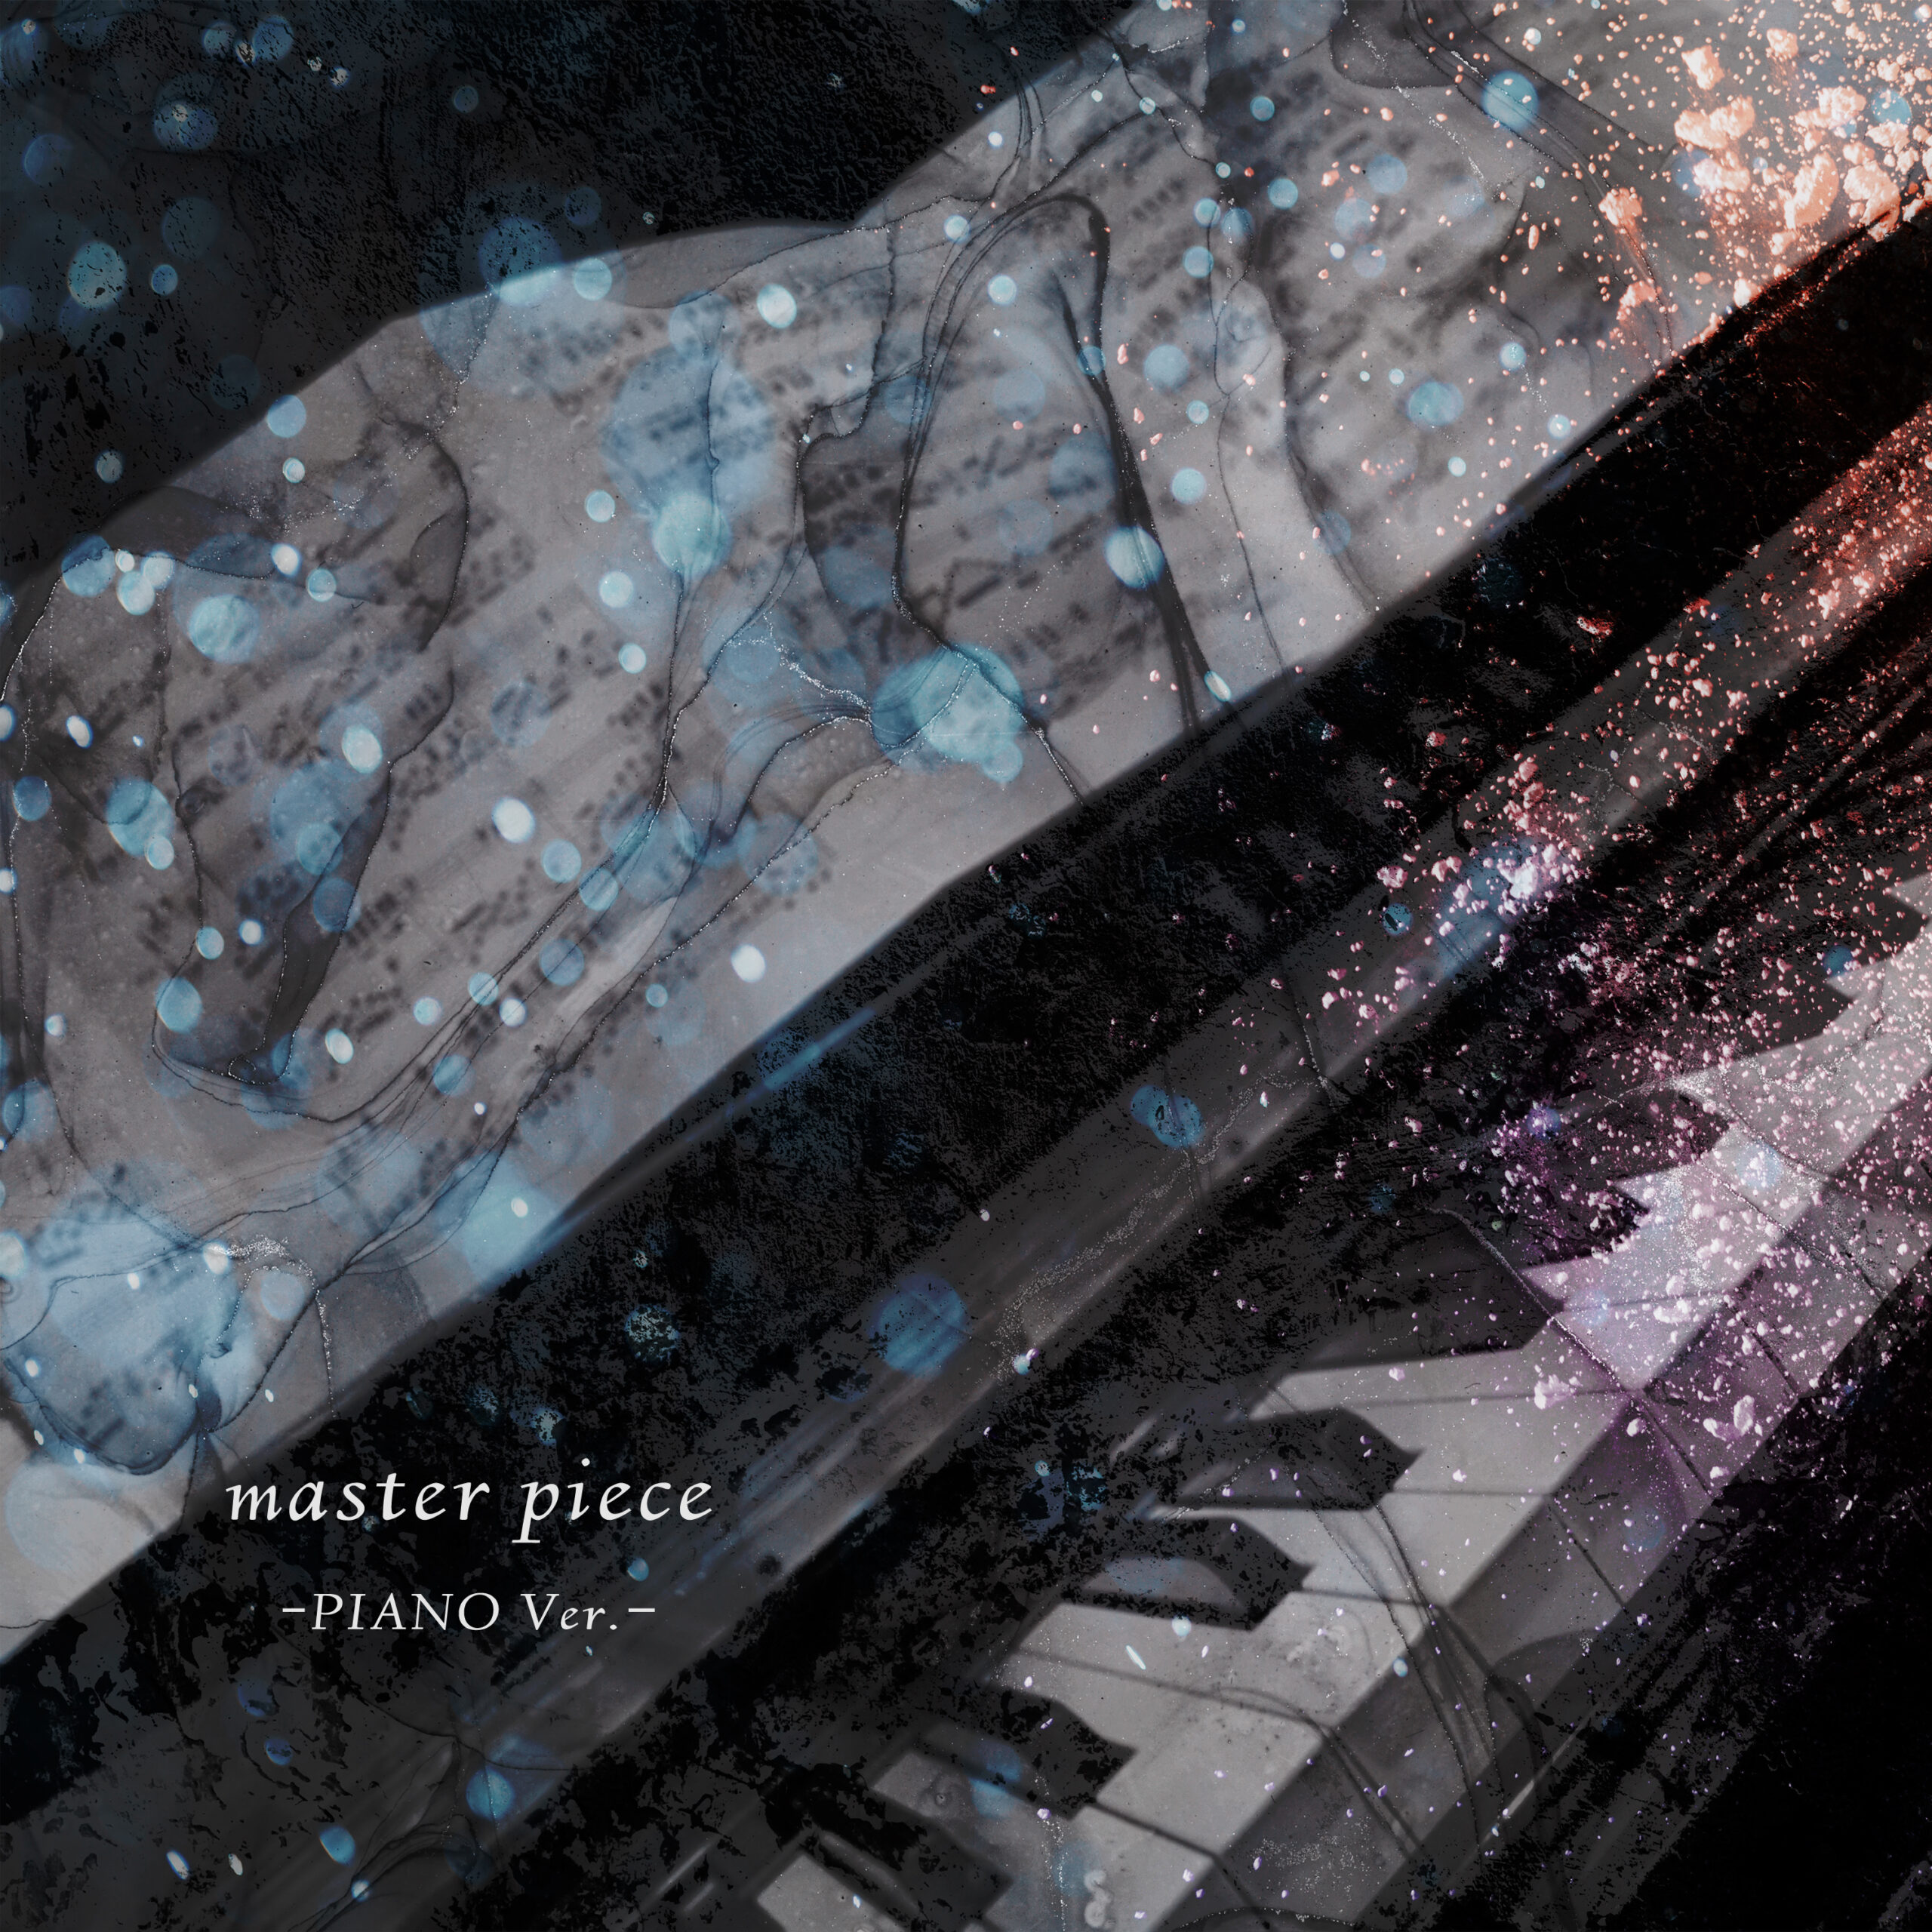 master piece -PIANO Ver.-